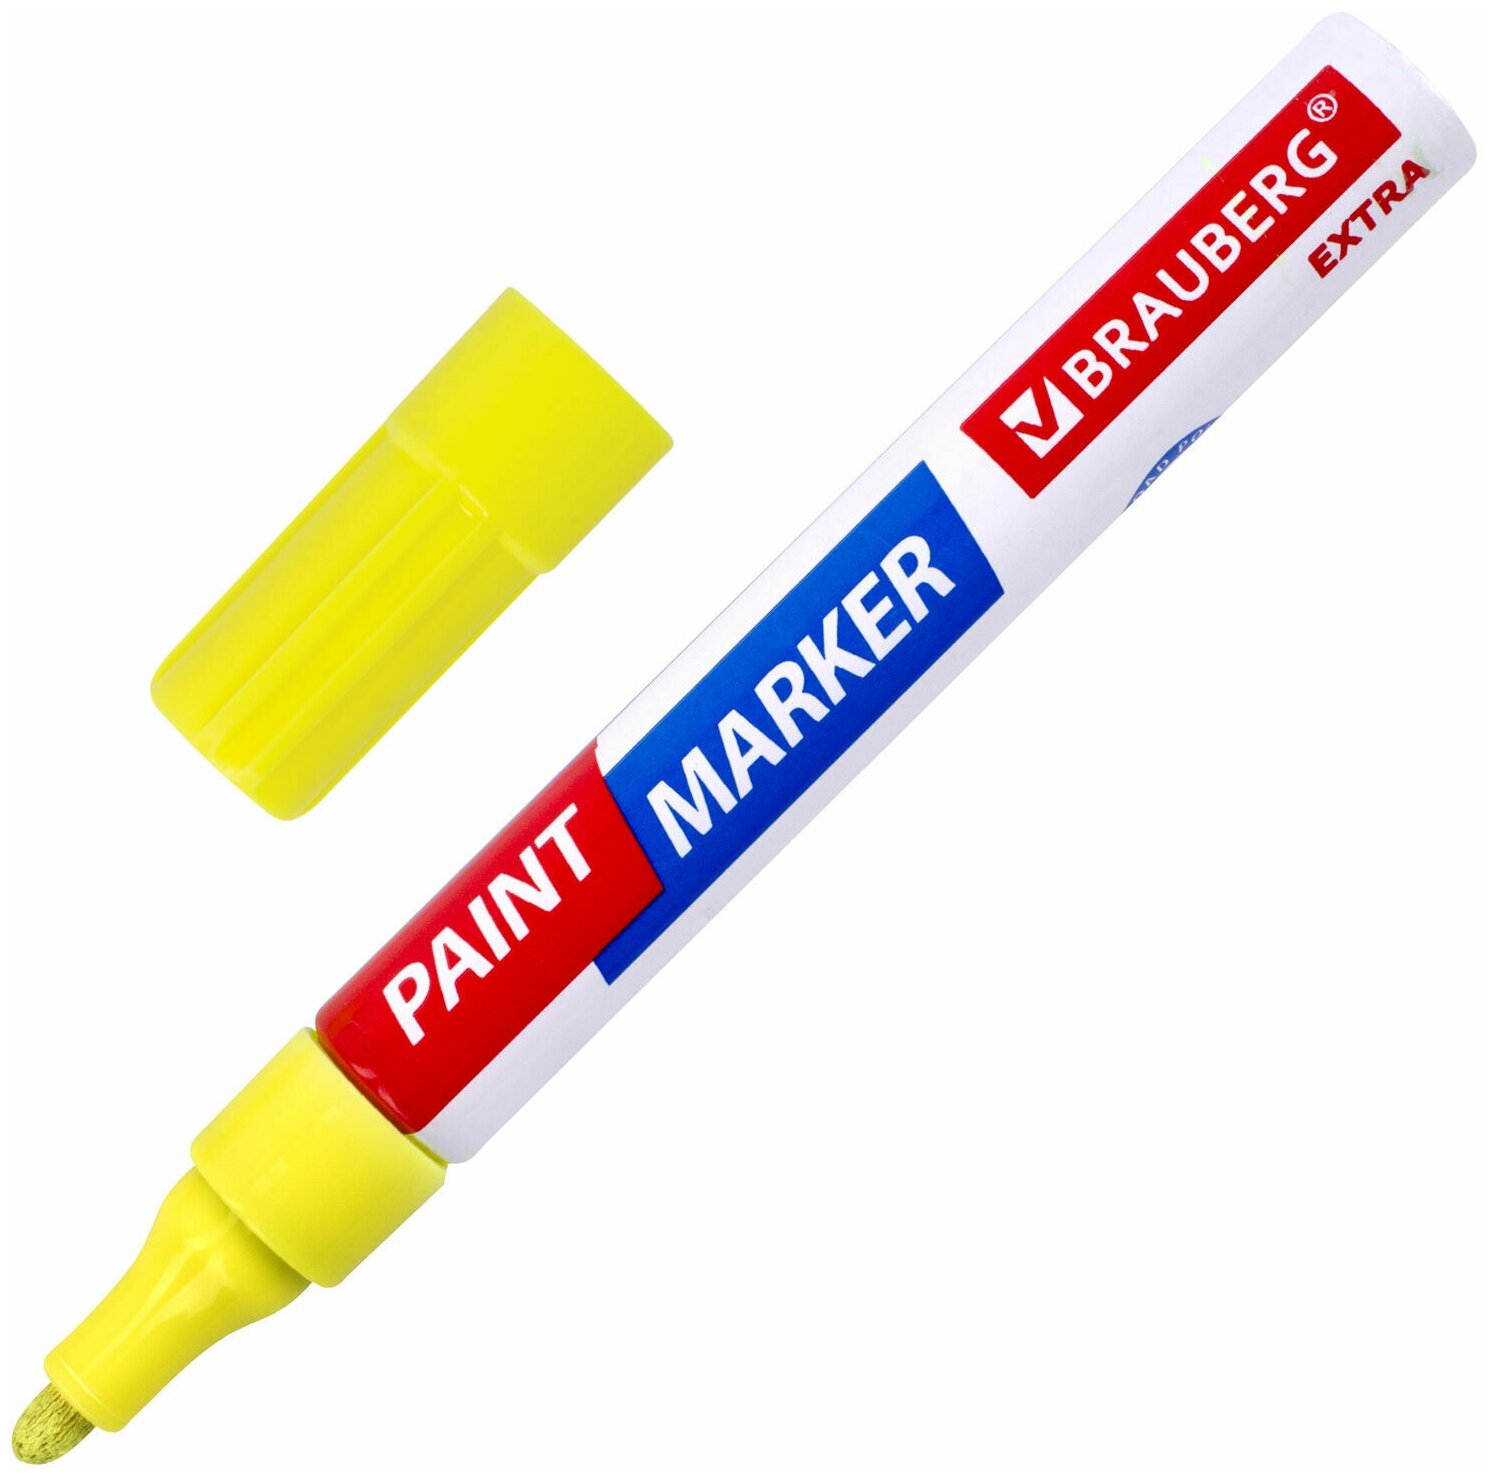 Маркер-краска лаковый EXTRA (paint marker) 4 мм, желтый, усиленная нитро-основа, BRAUBERG, 151984 /Квант продажи 1 ед./